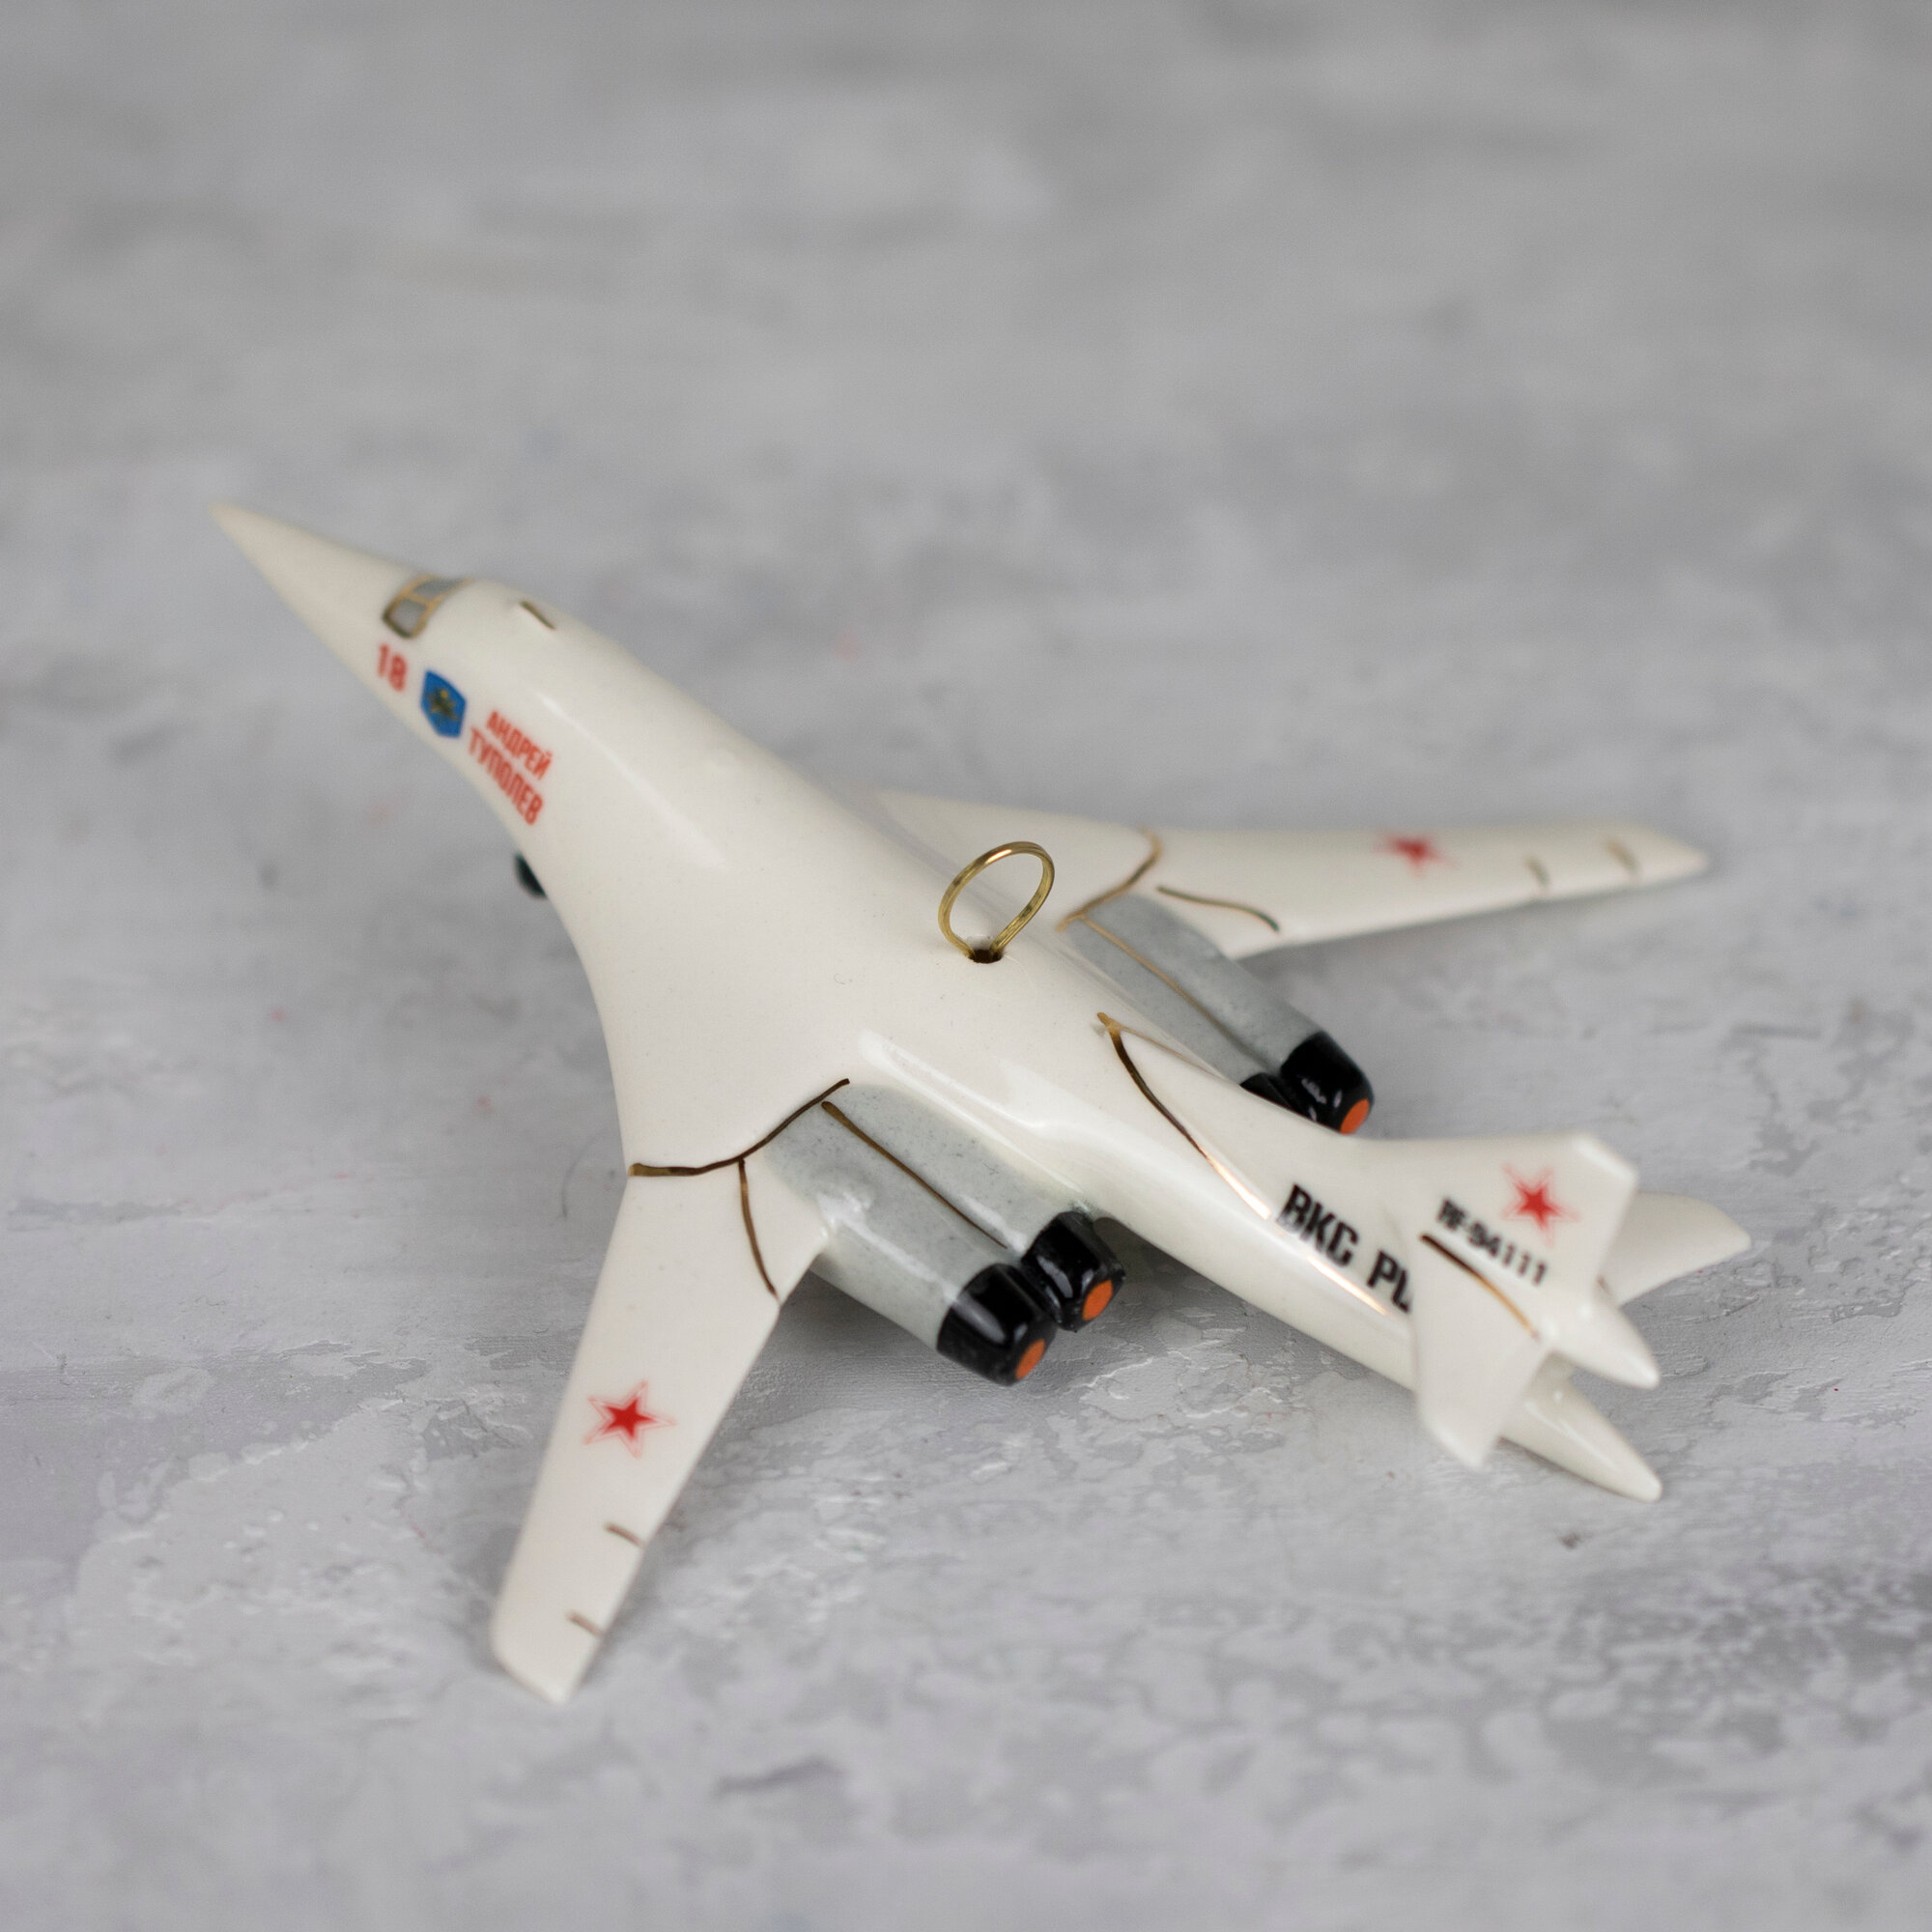 Ёлочная игрушка/сувенир/ воздушный транспорт "Самолет Ту-160" / Фарфор